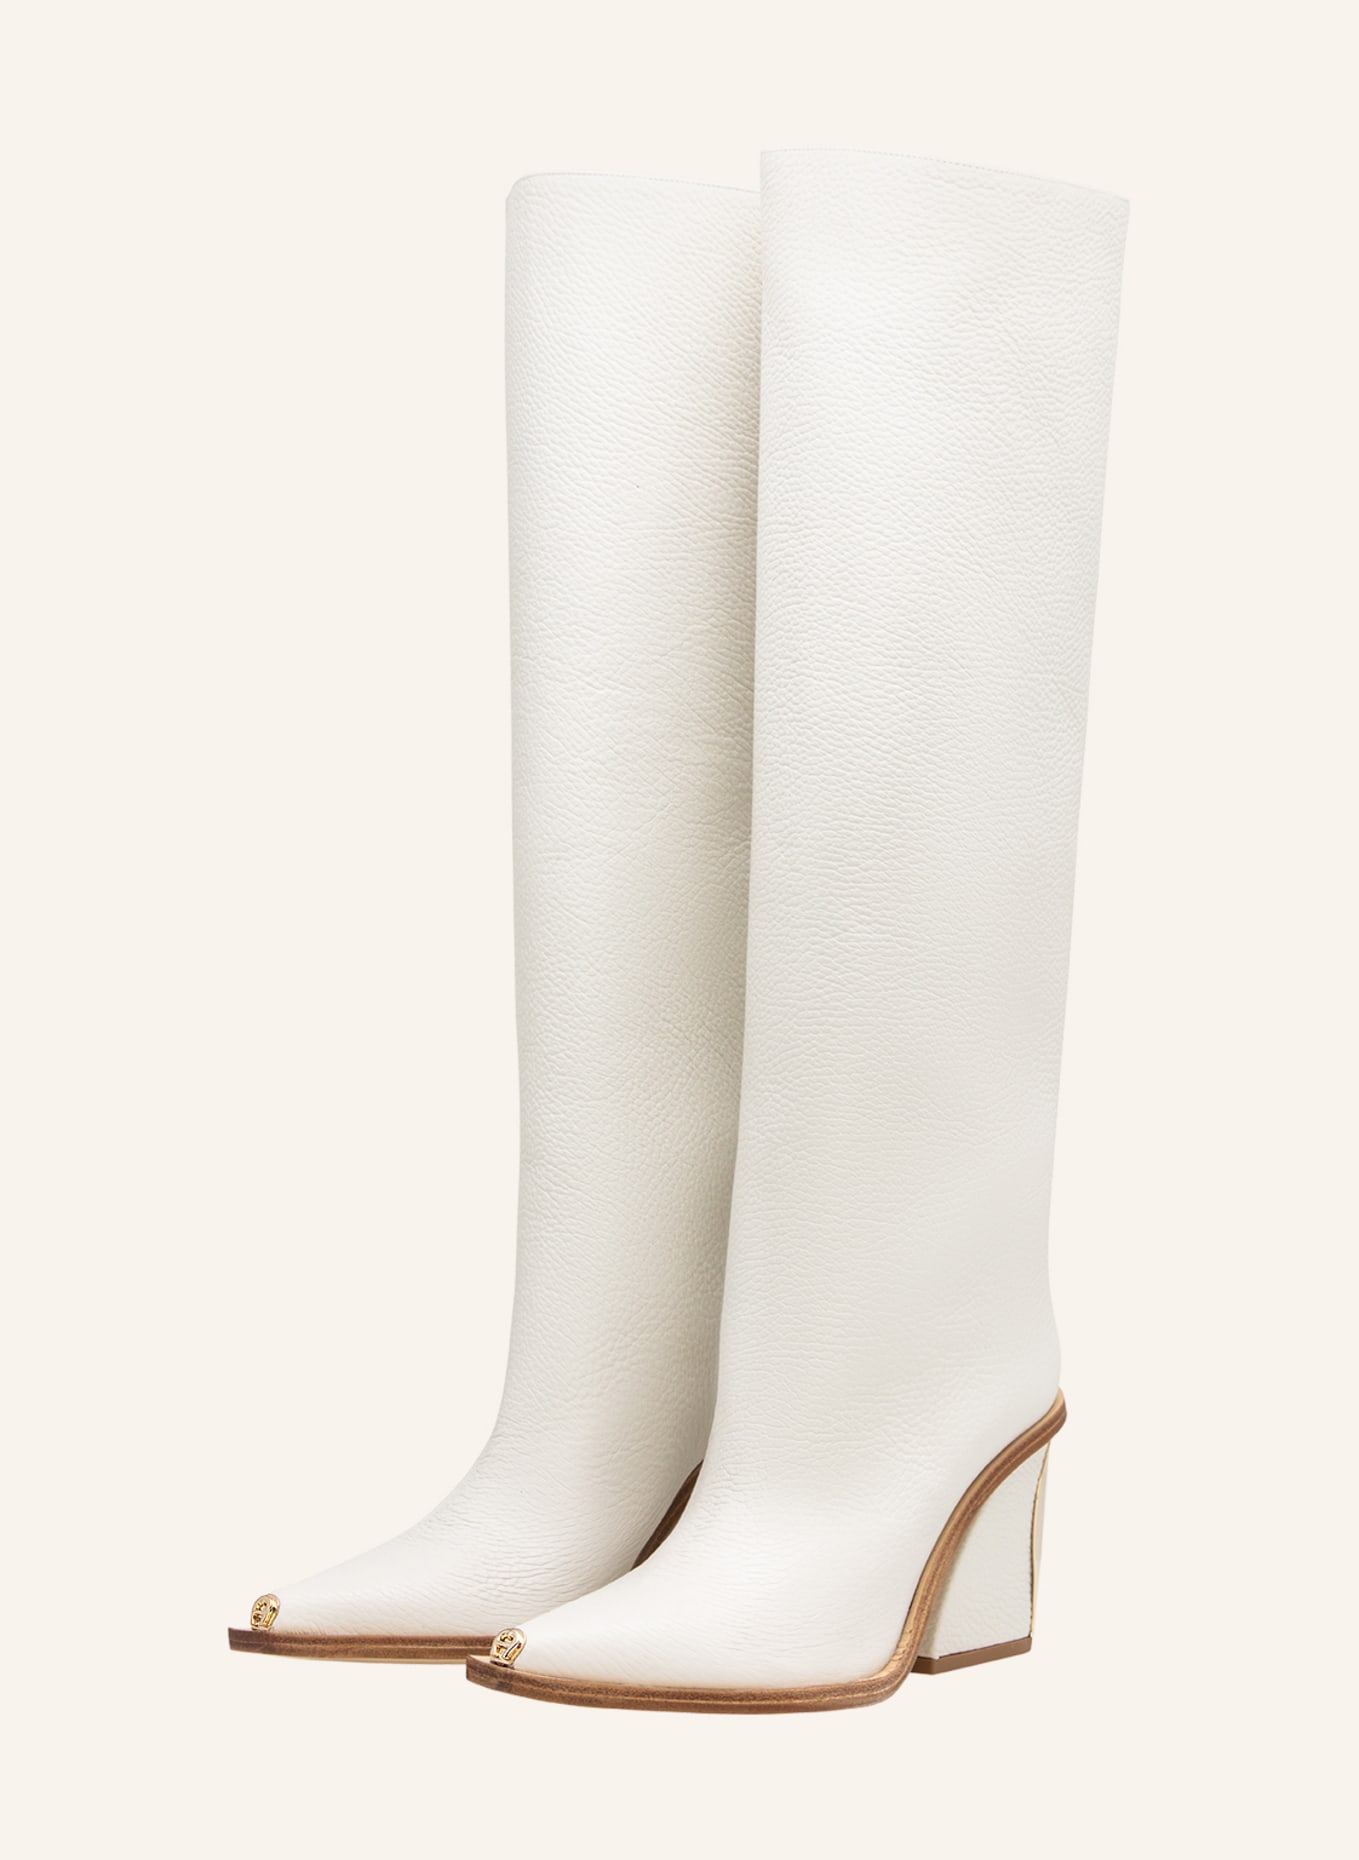 AIGNER Fashion Boots KYLIE 1C, Farbe: BEIGE/ WEISS (Bild 1)